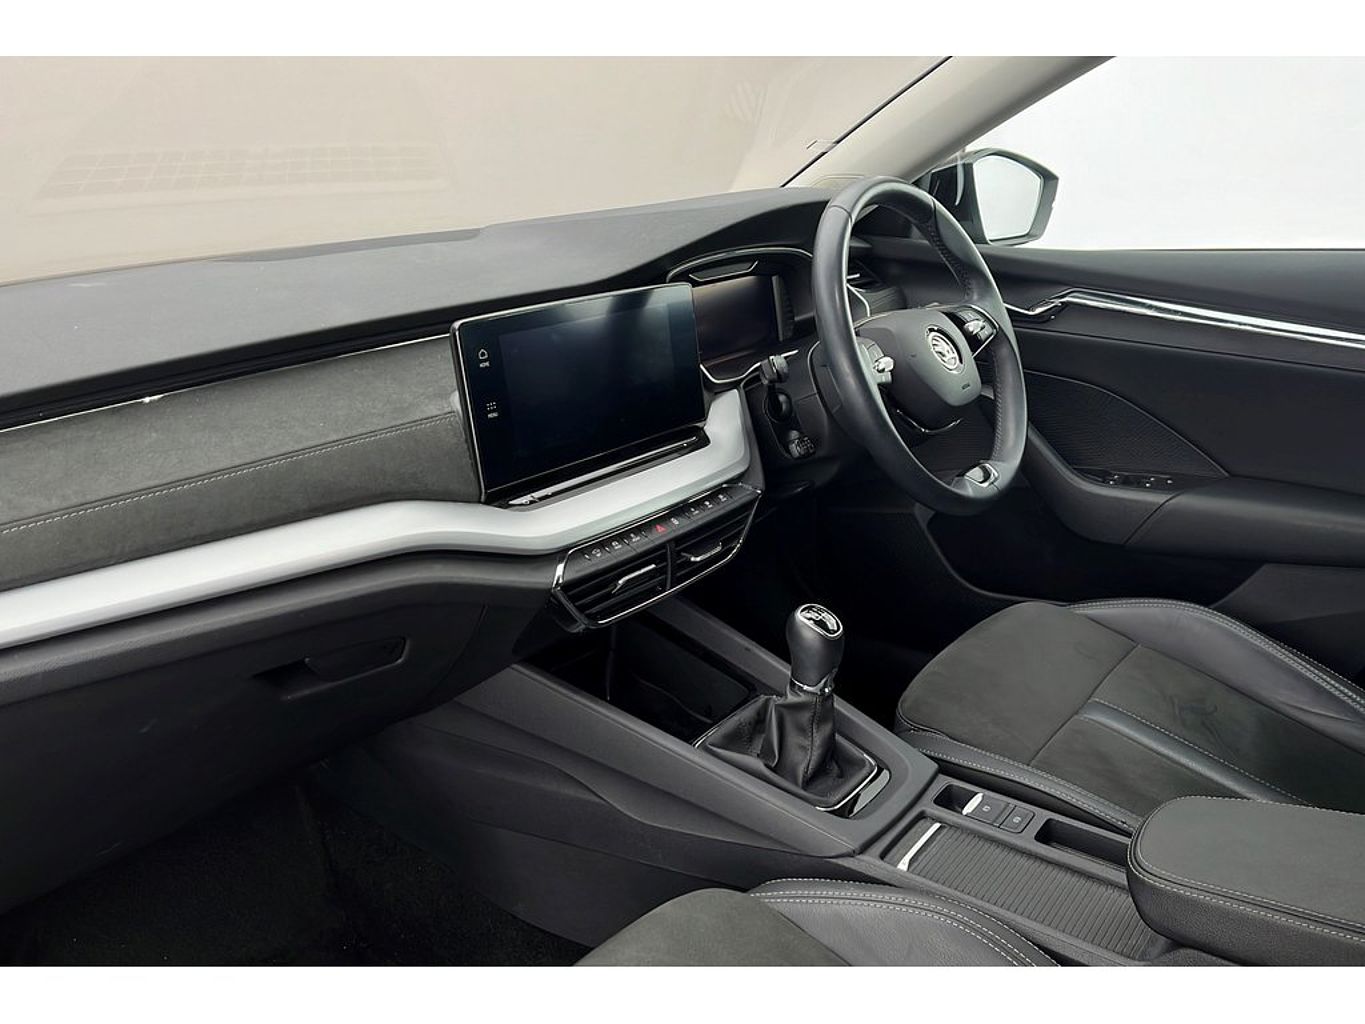 SKODA Octavia Hatch SE L 1.5 TSI 150 PS 6G Man